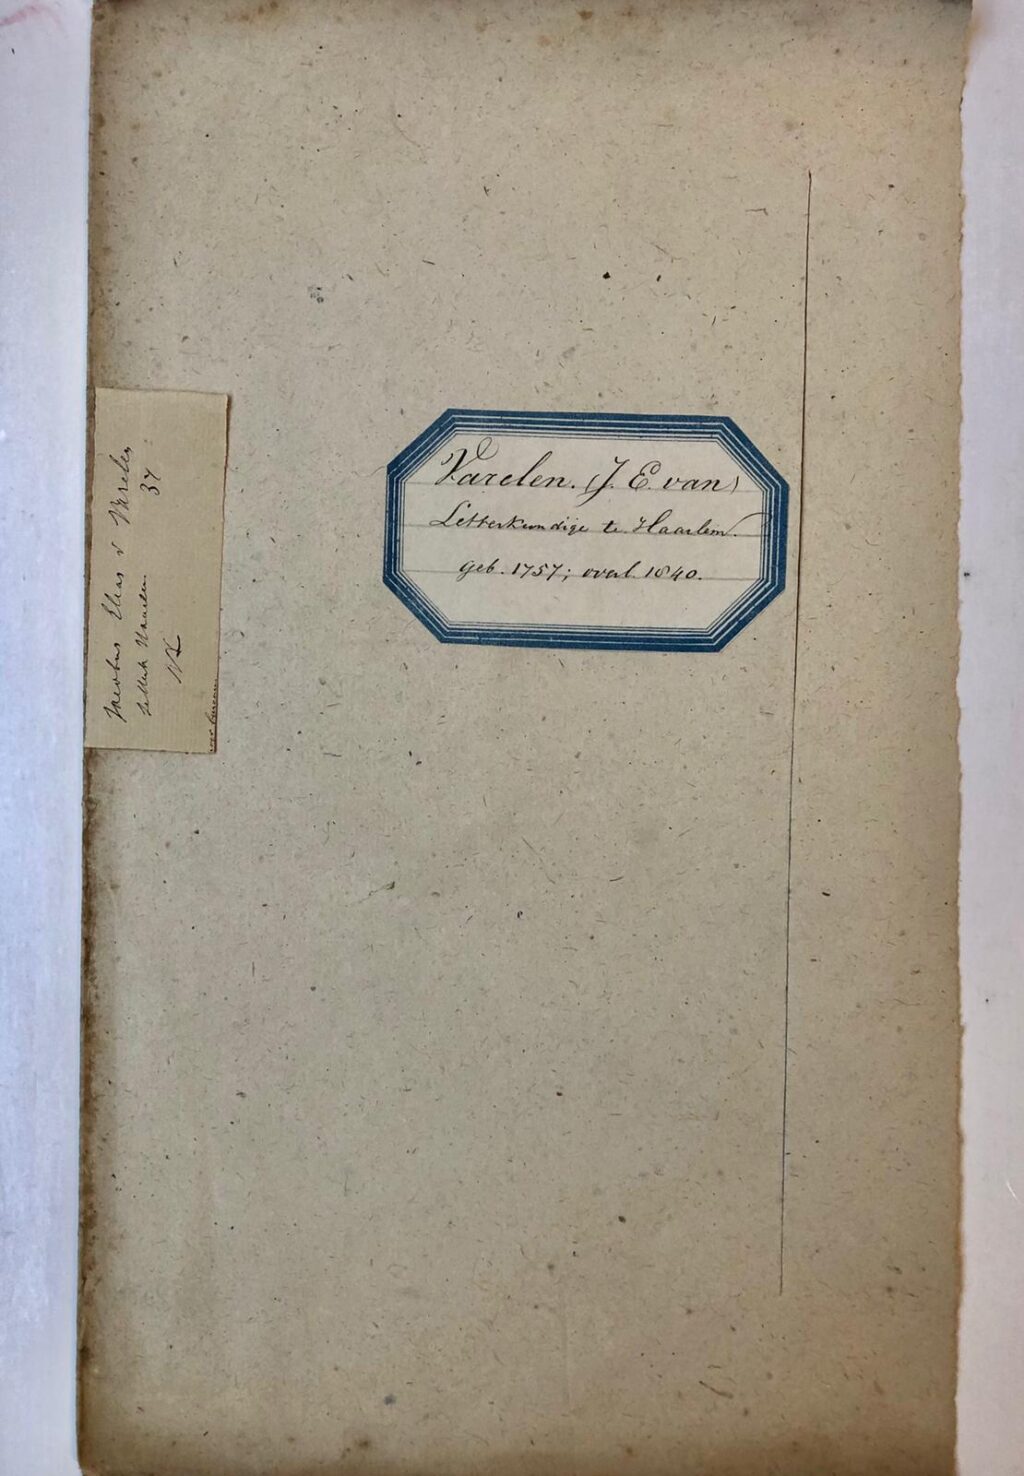 [MANUSCRIPT VARELEN, VAN] Brief van J.E. van Varelen, Haarlem 1835, aan mr. W.H. Tydeman te Leiden. 4(: 1 p.